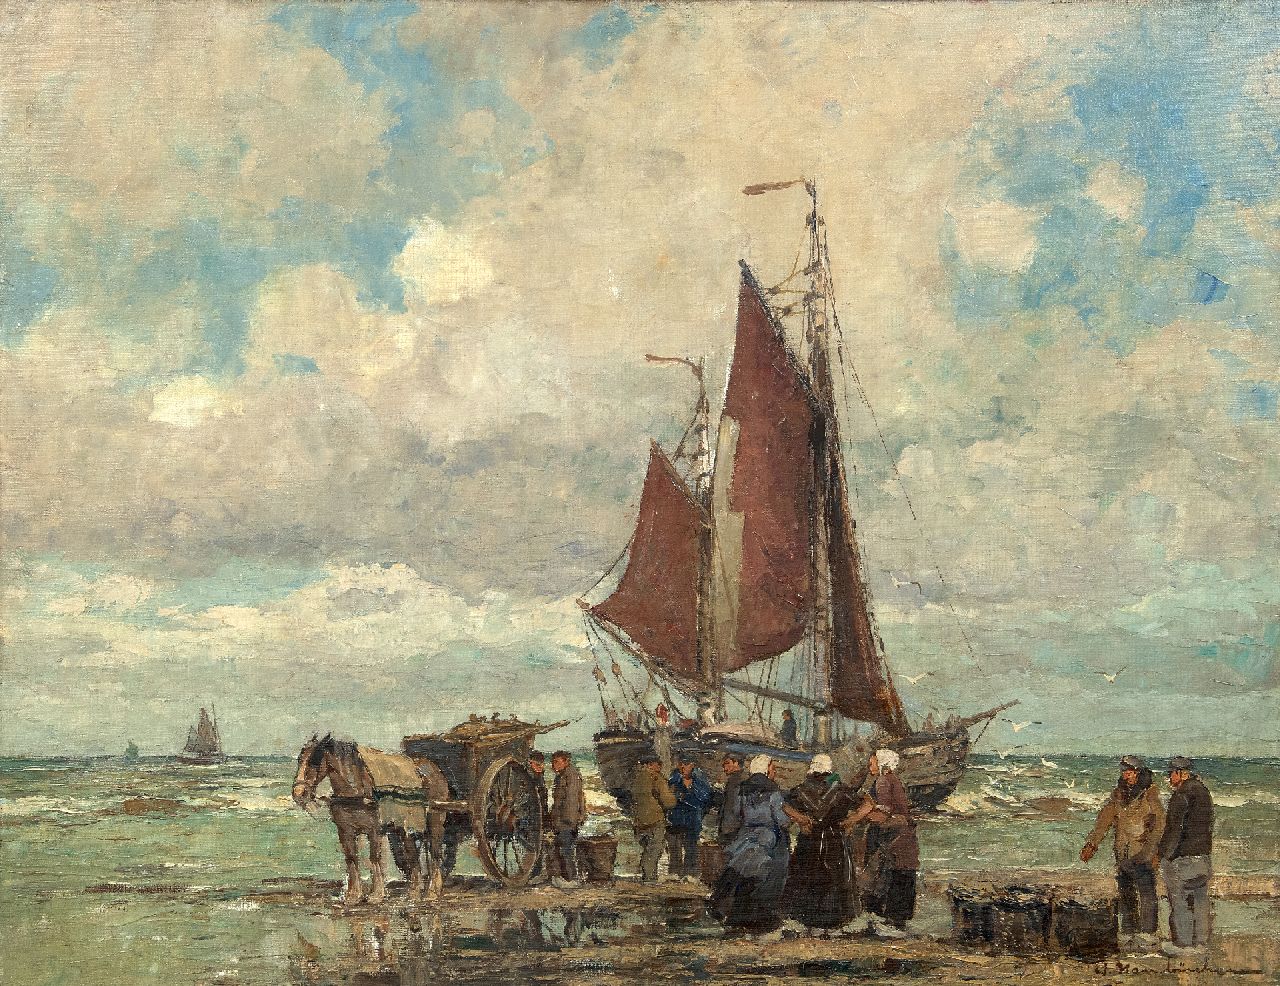 Hambüchen W.  | Wilhelm Hambüchen | Schilderijen te koop aangeboden | Bomschuit en vissers op het strand van Katwijk, olieverf op doek 60,2 x 80,4 cm, gesigneerd rechtsonder